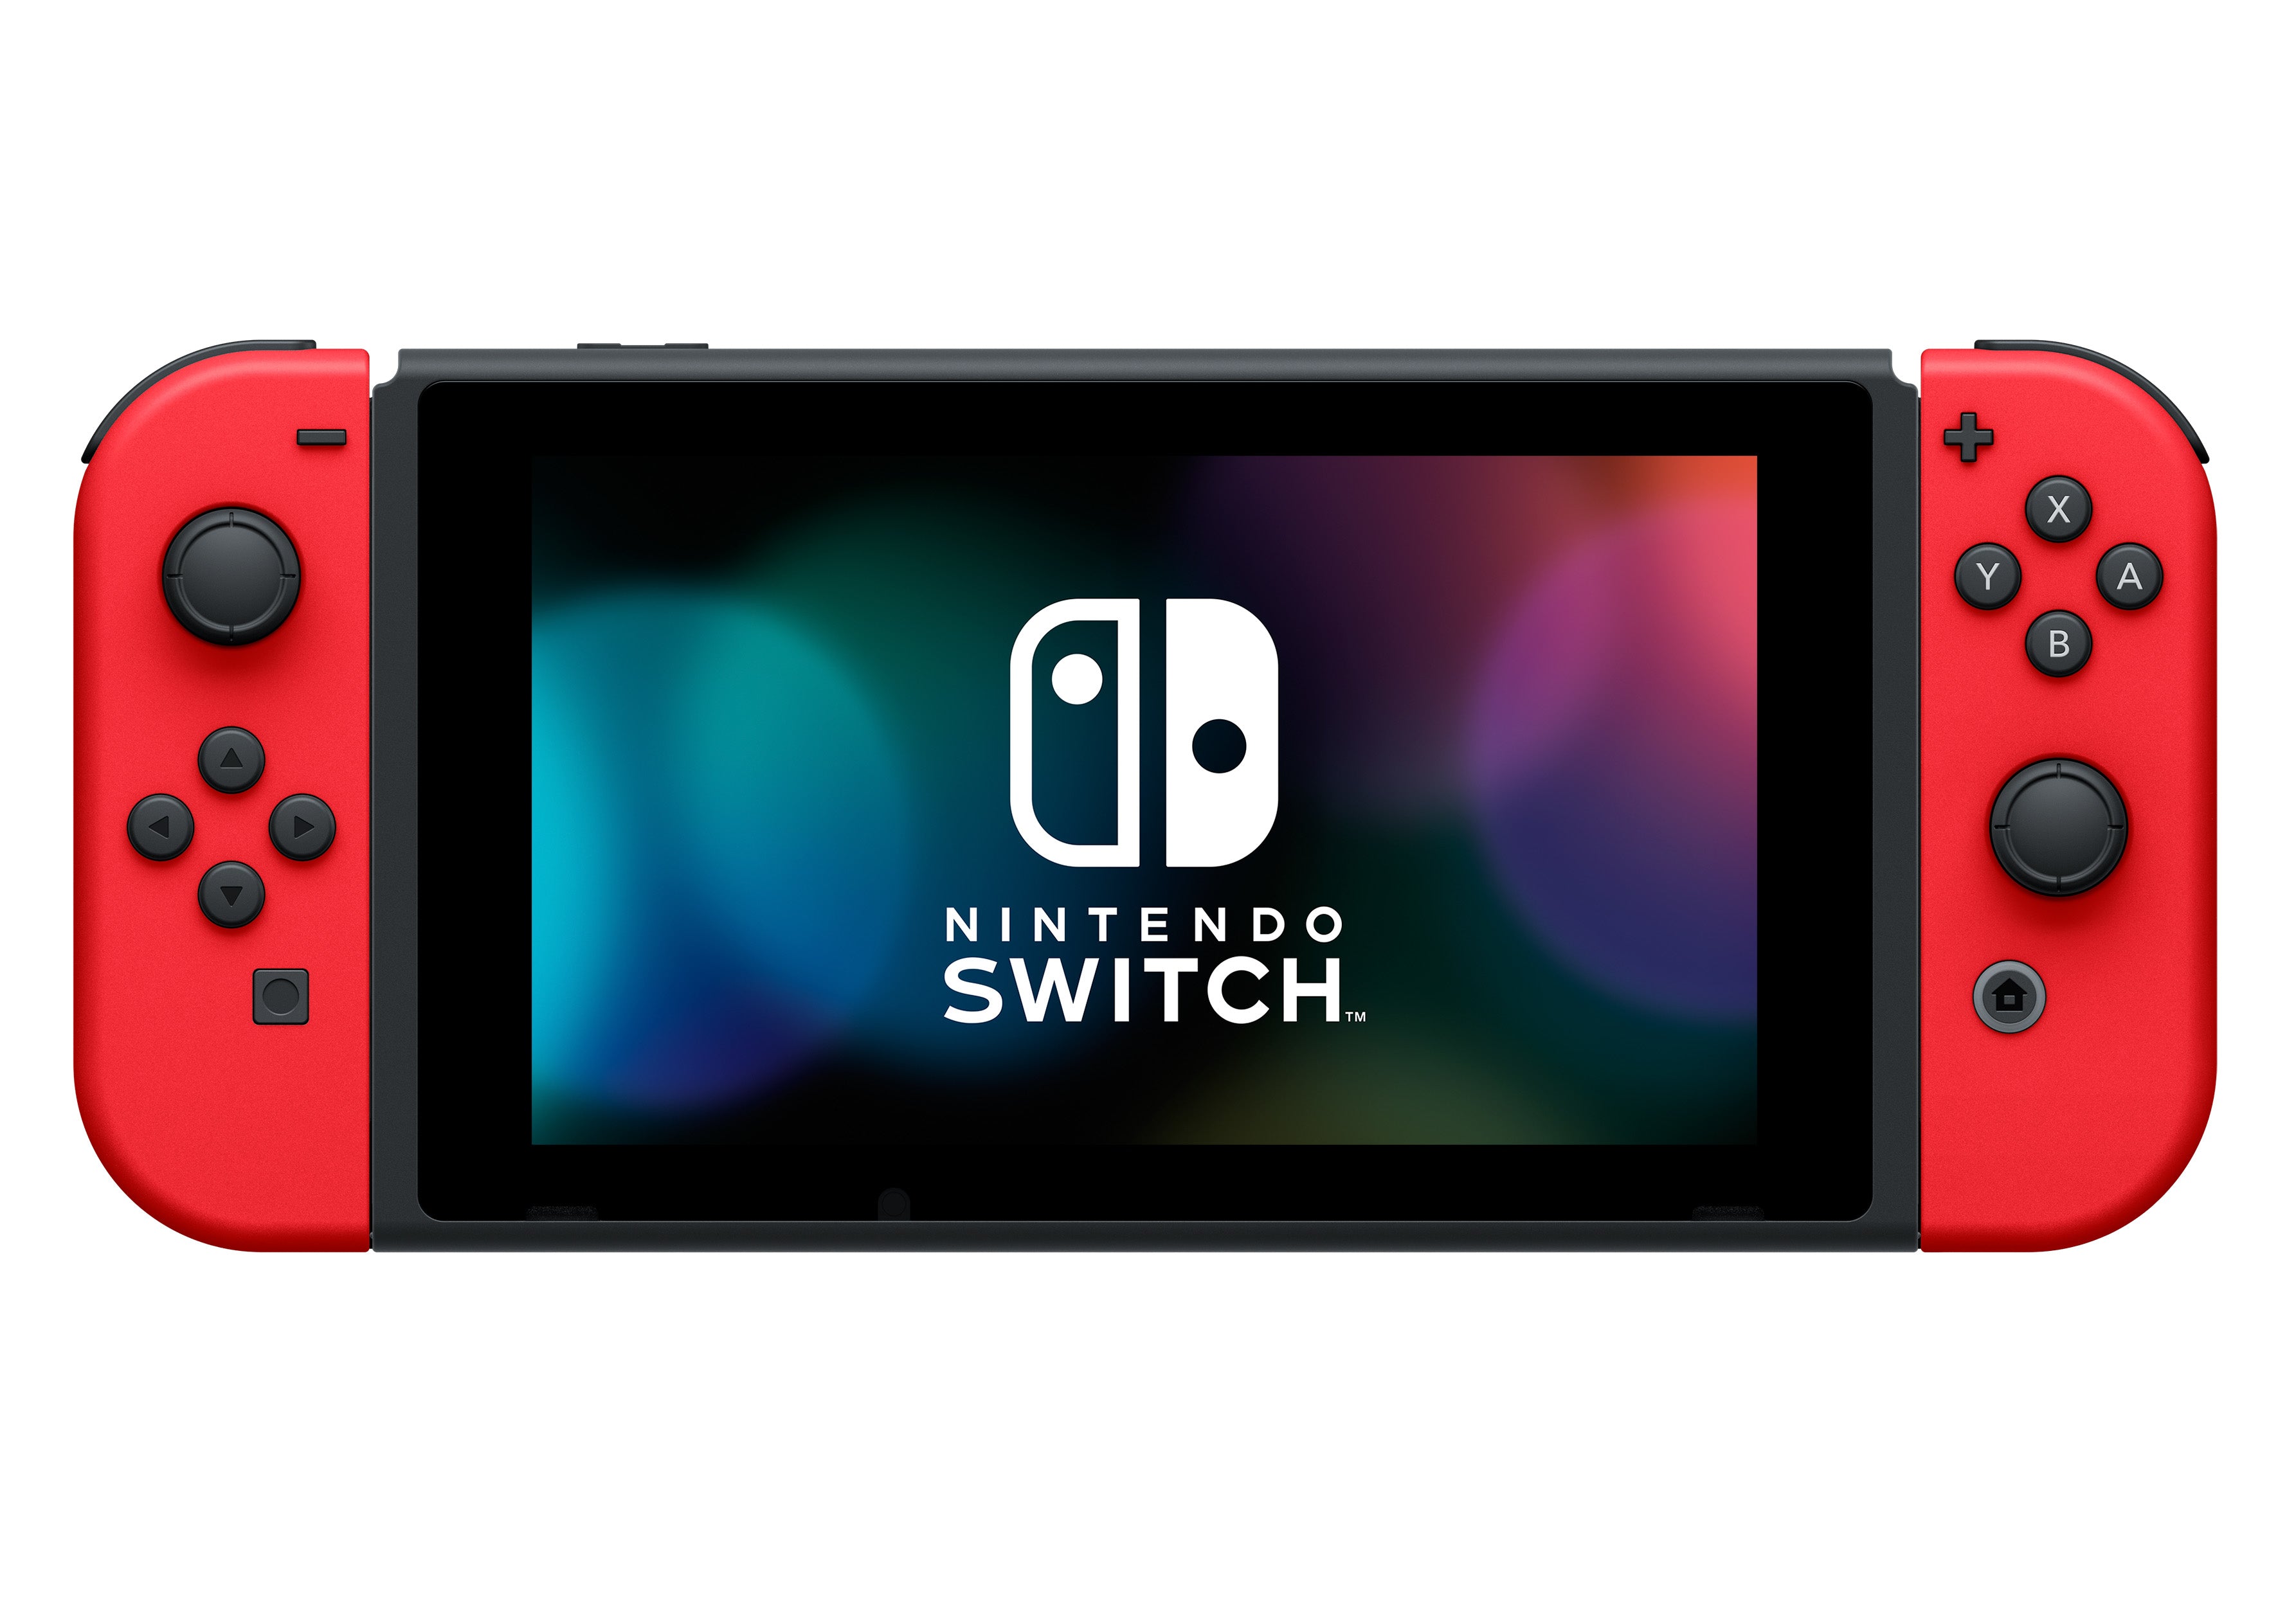 mølle Titicacasøen Habitat Nintendo Switch Mario Odyssey Bundle Limited Edition – Geekd